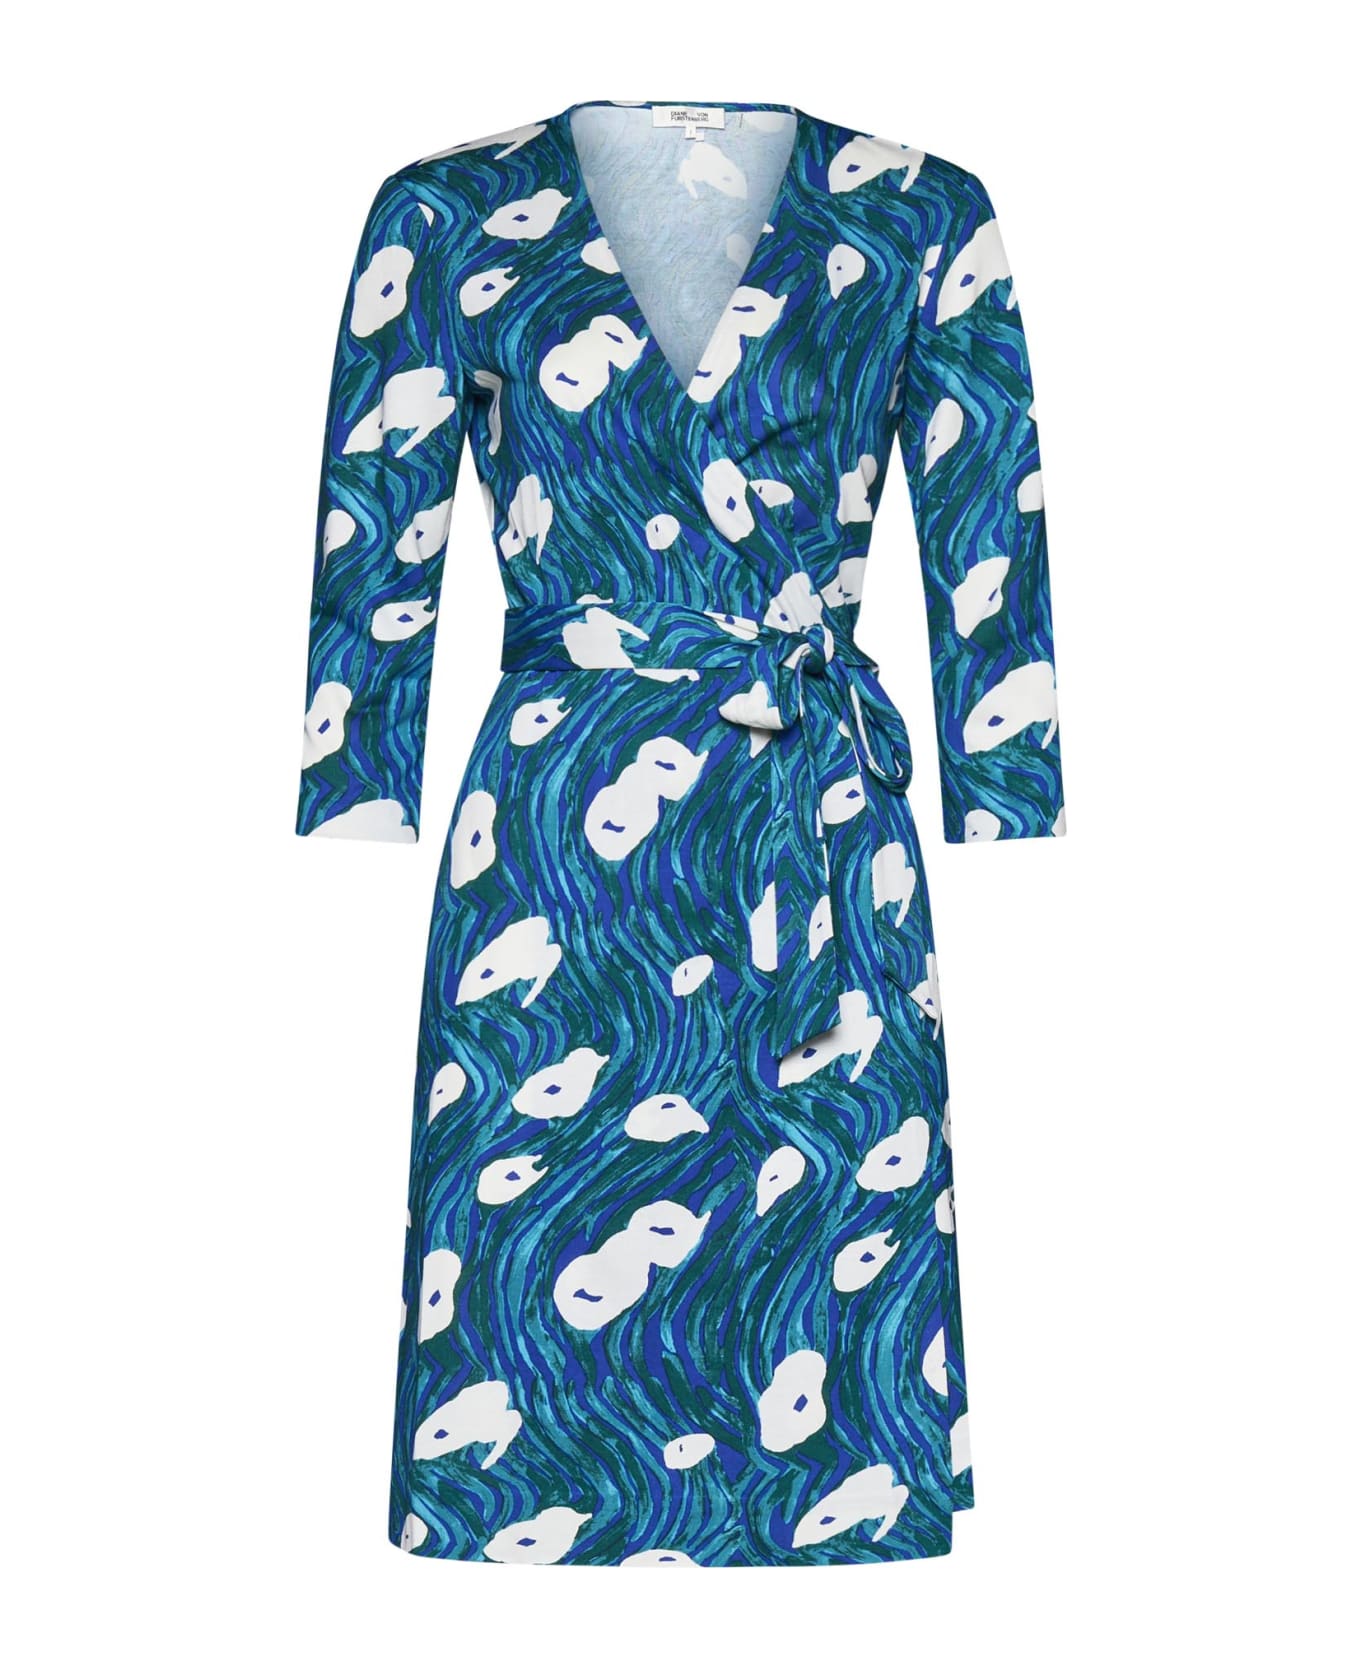 Diane Von Furstenberg Dress - Ocean tide quetzal green